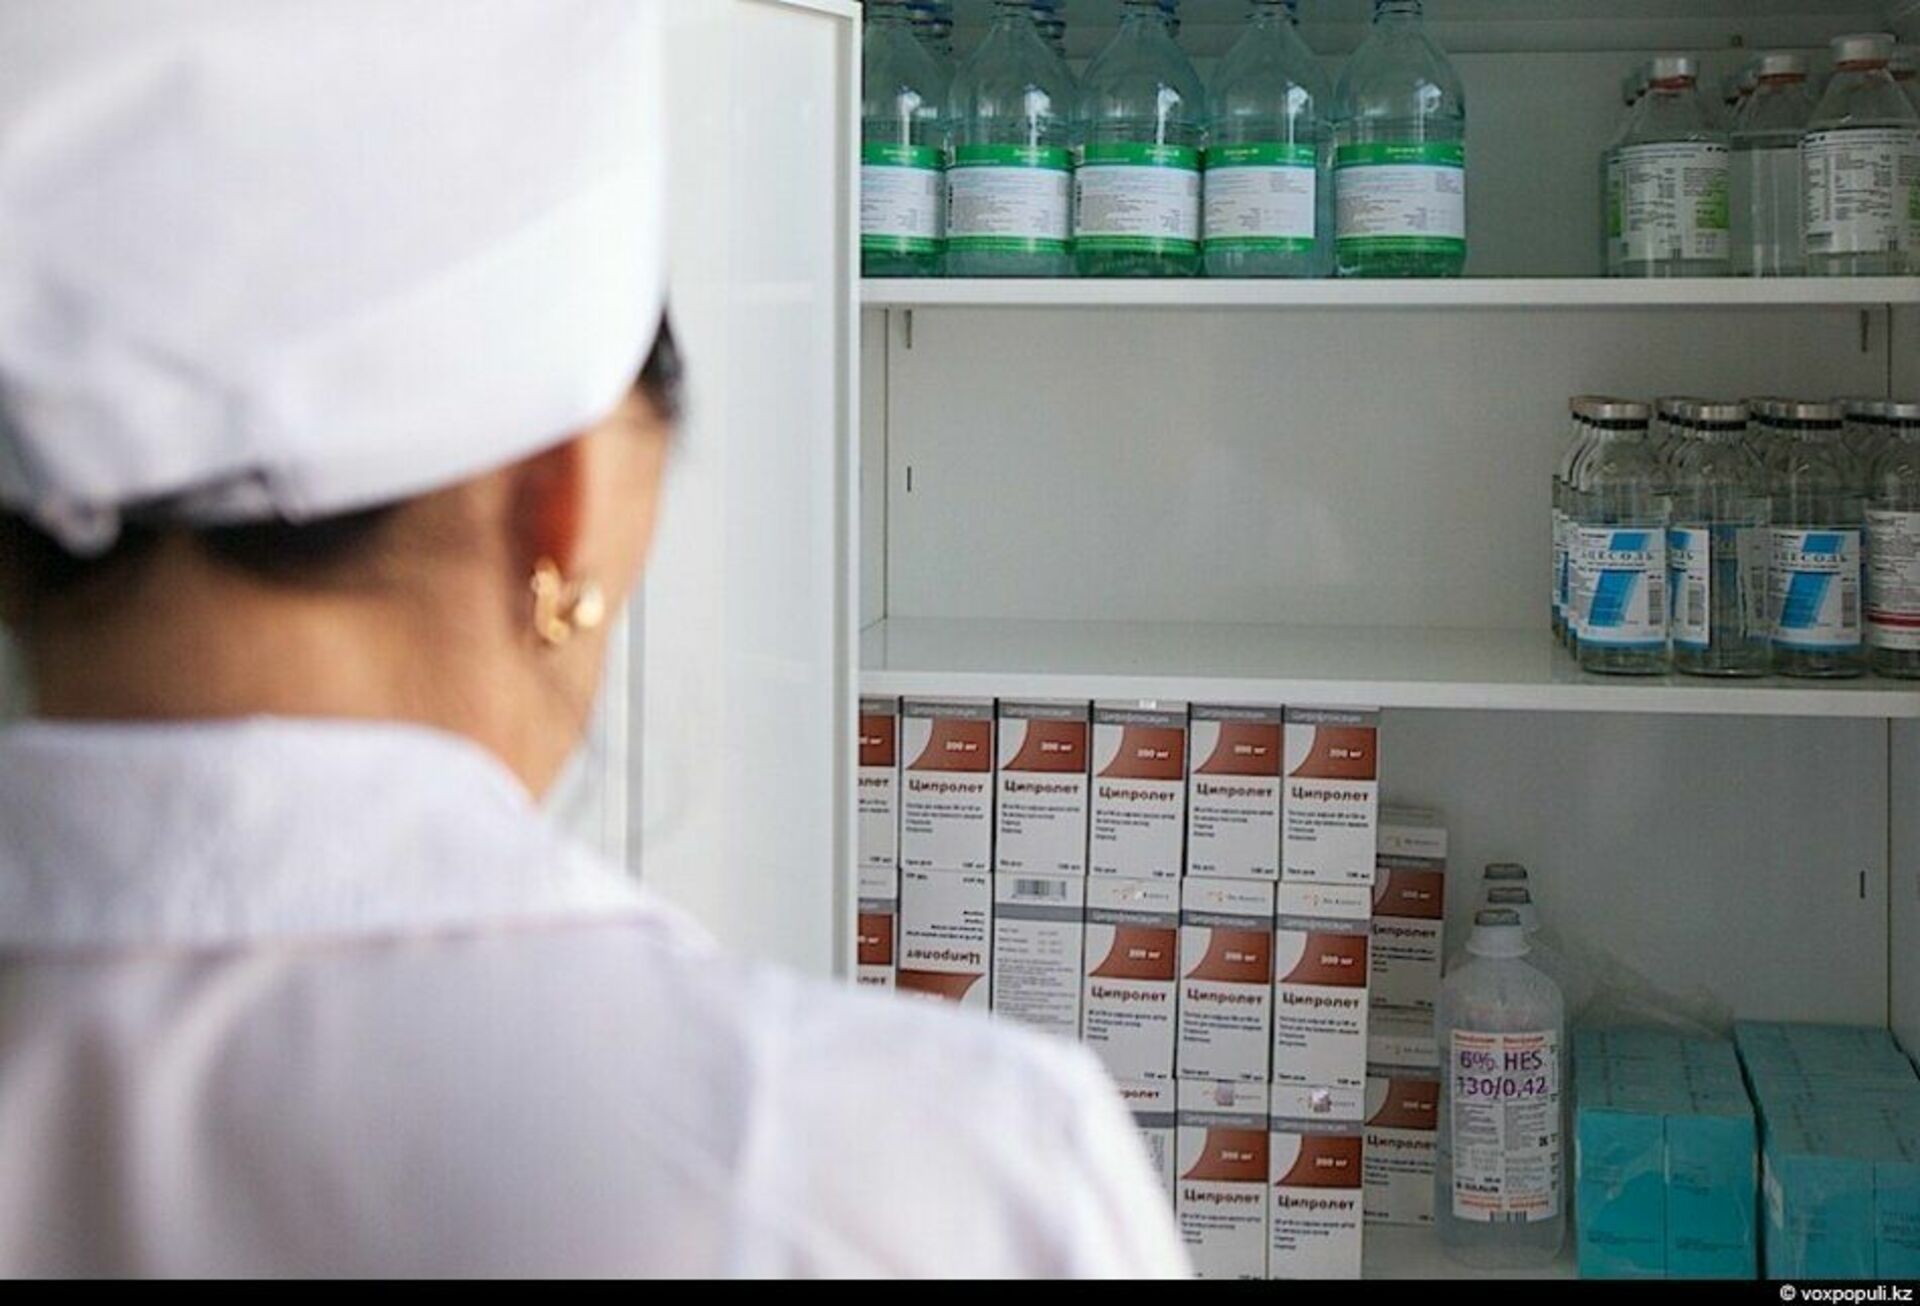 Аптека лечебного учреждения. Хранение лекарственных средств. Лекарственные препараты в аптеке. Шкафы для хранения лекарственных препаратов. Хранение в аптеке.